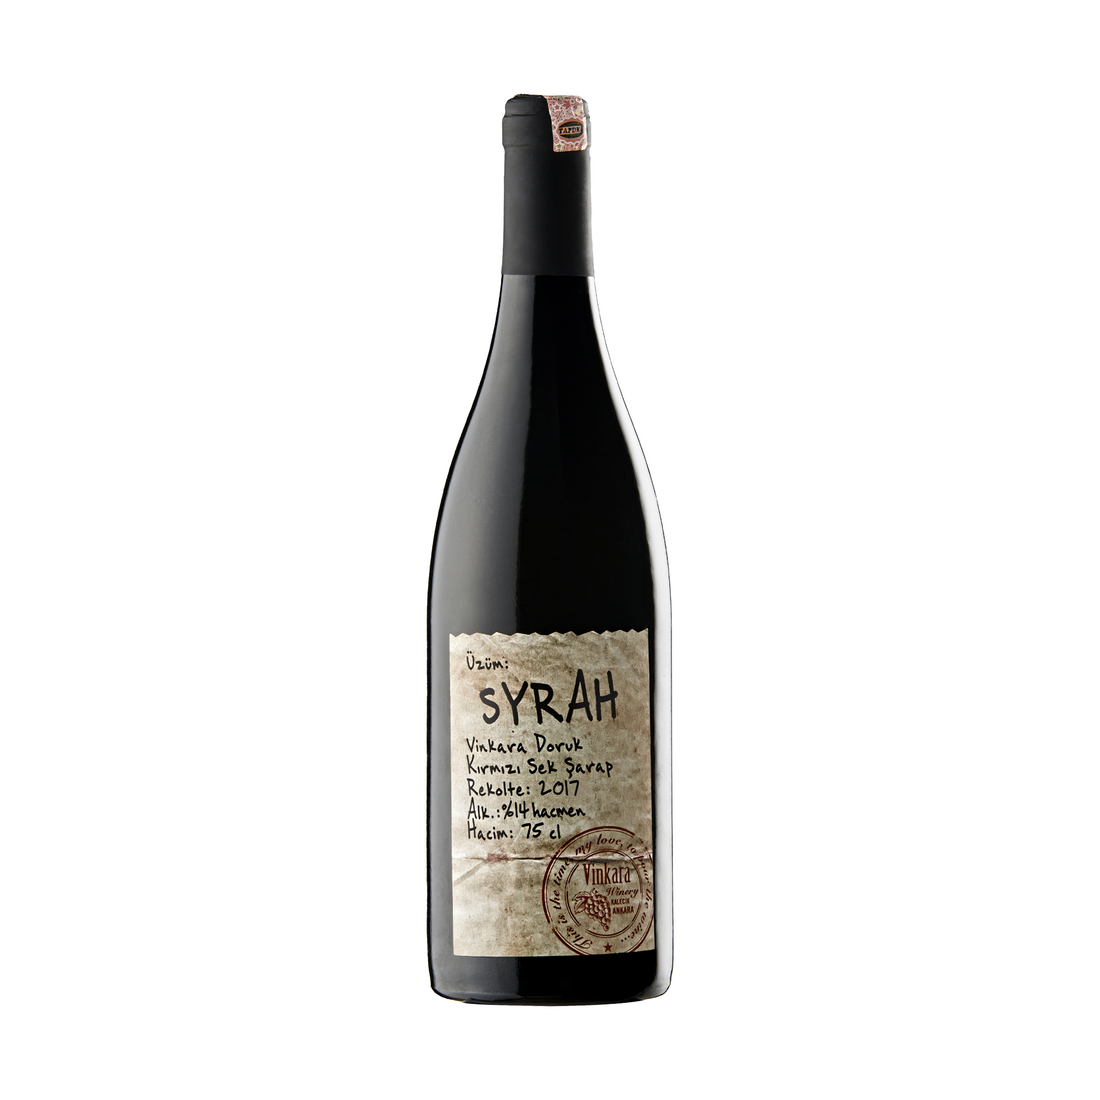 Vinkara Doruk Syrah 750ml Dry Turkish Red Wine | Vinkara Doruk Syrah Kirmizi Sek Sarap | Dry Red Wine